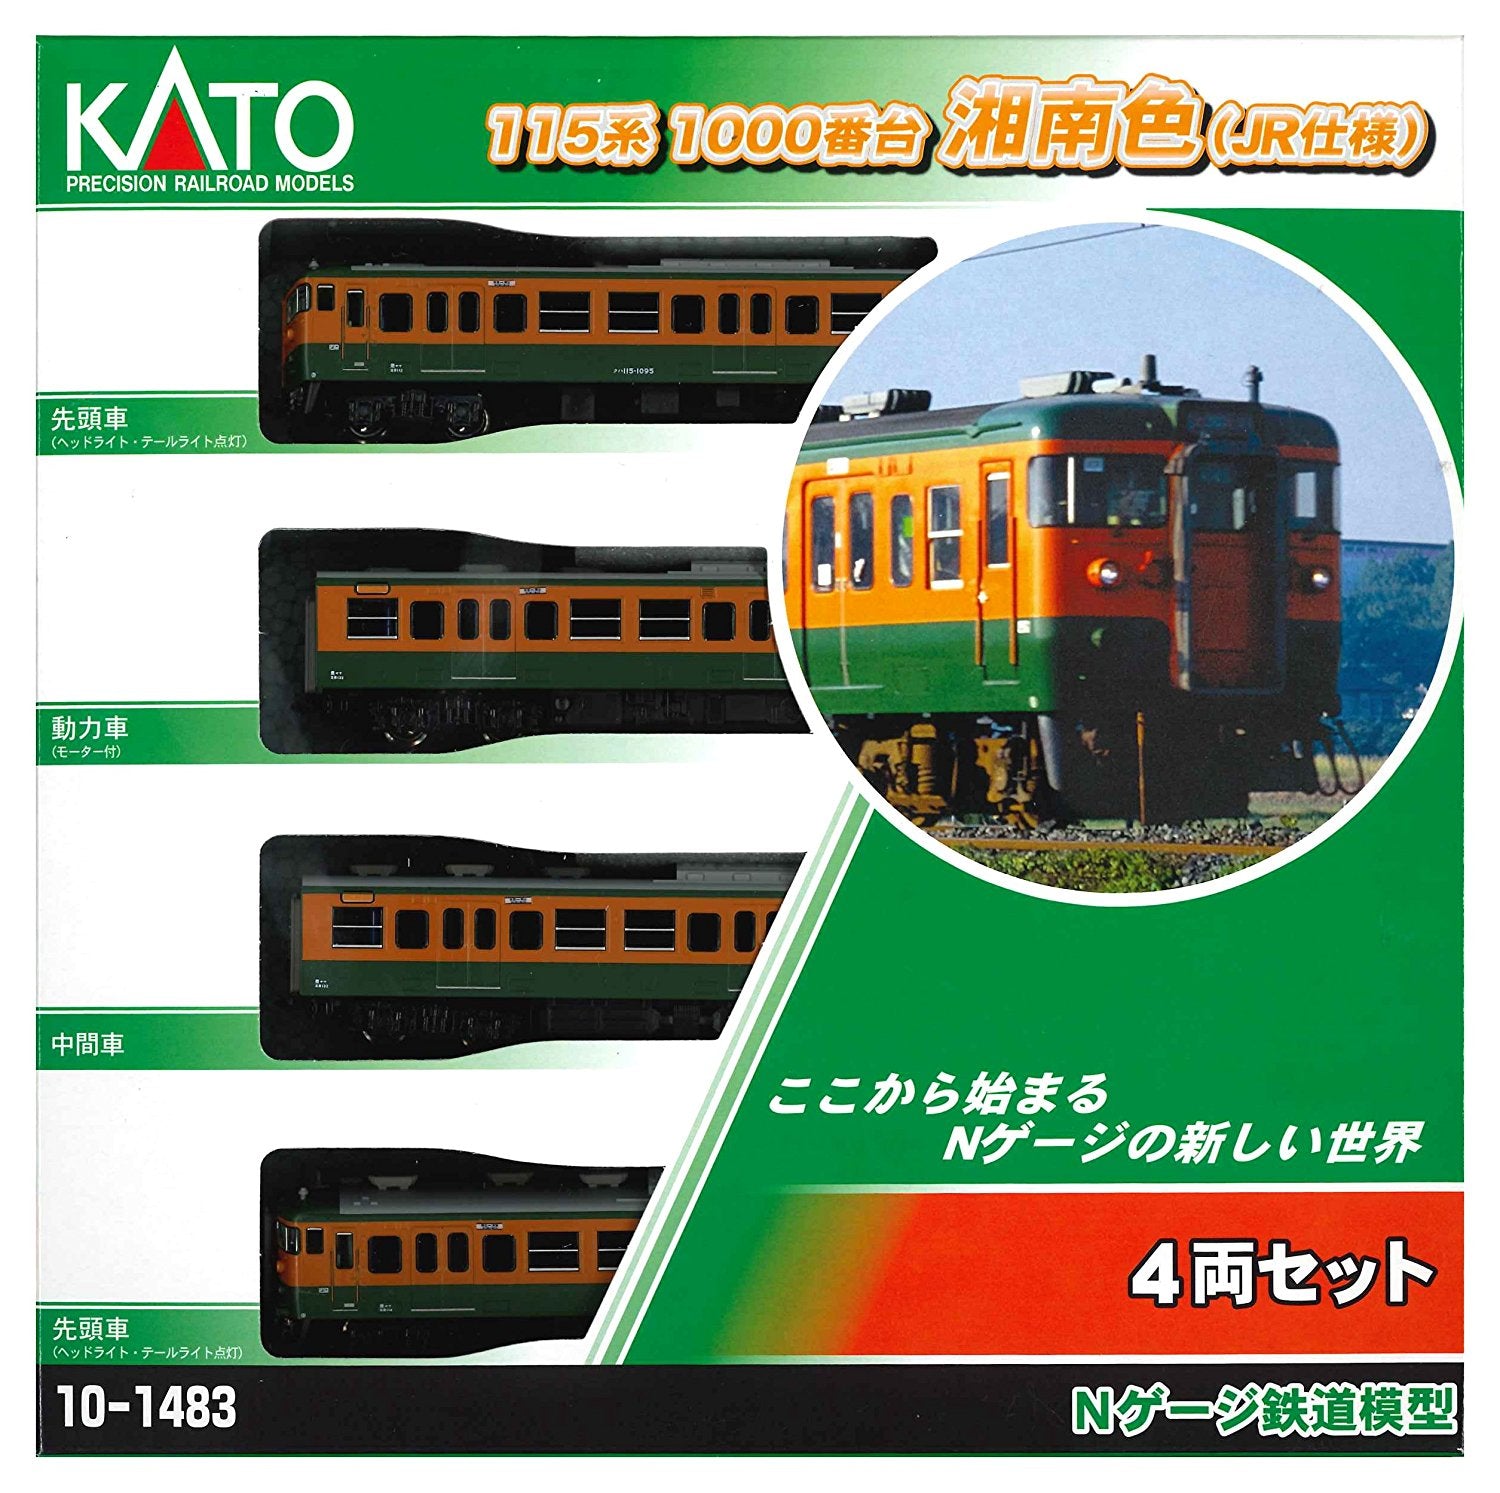 10-1483 Series 115-1000 Shonan Color (J.R. Version) Four Car Set